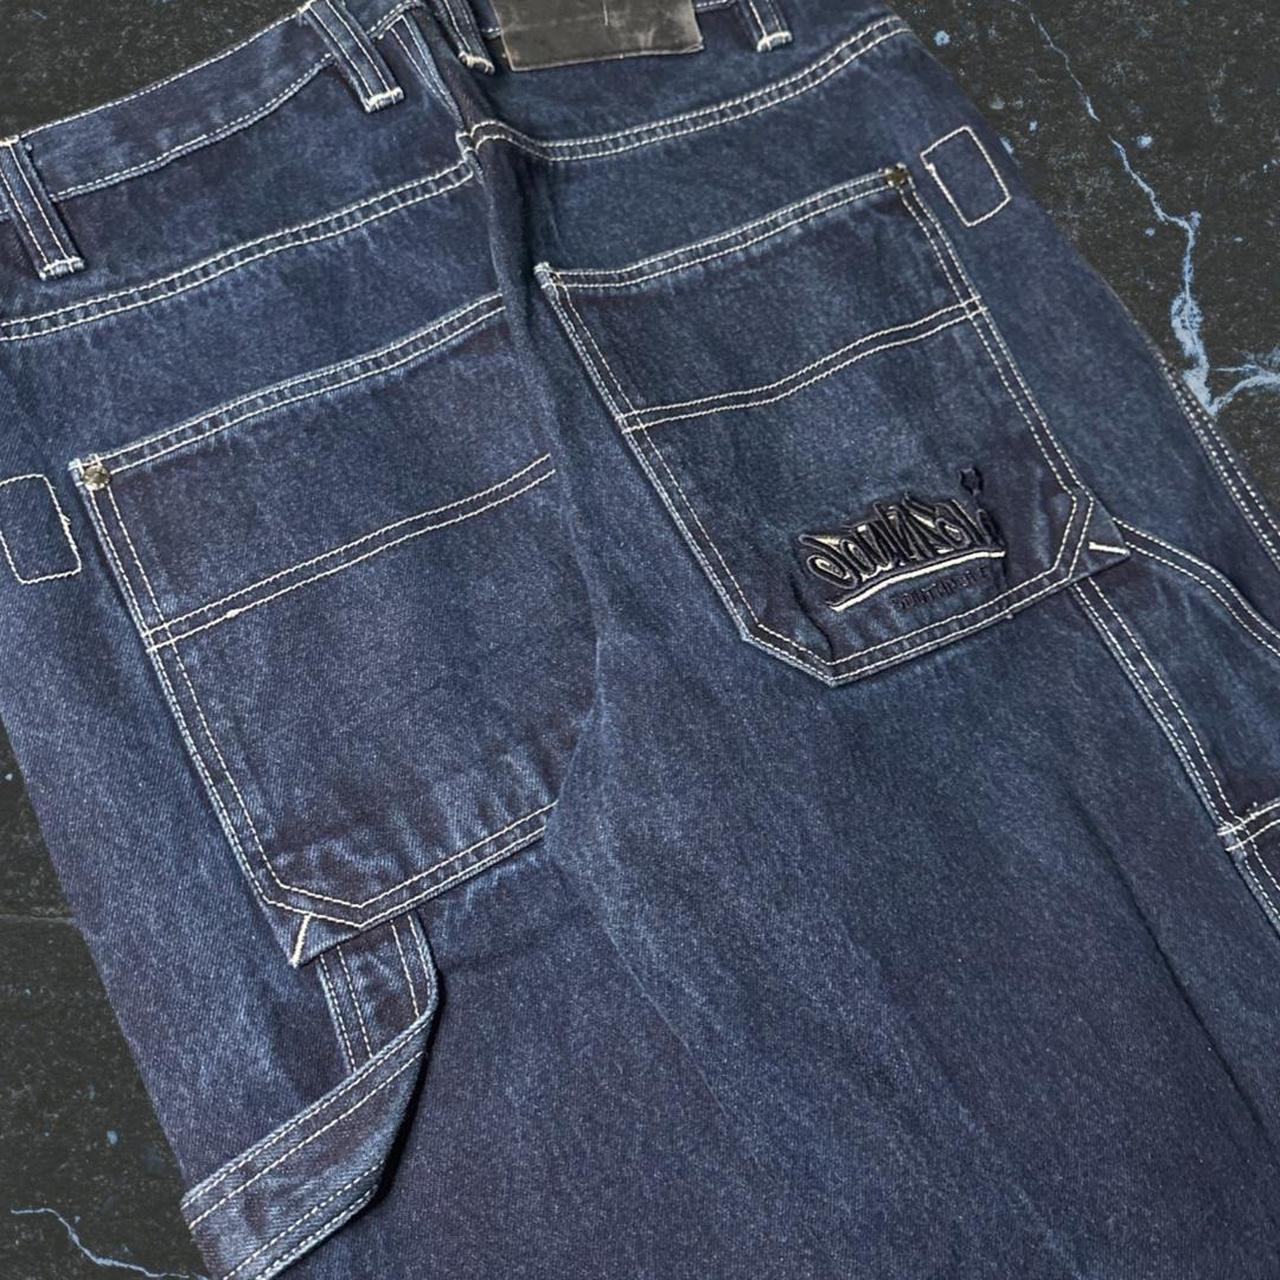 Southpole baggy carpenter jeans, size 34x32.... - Depop